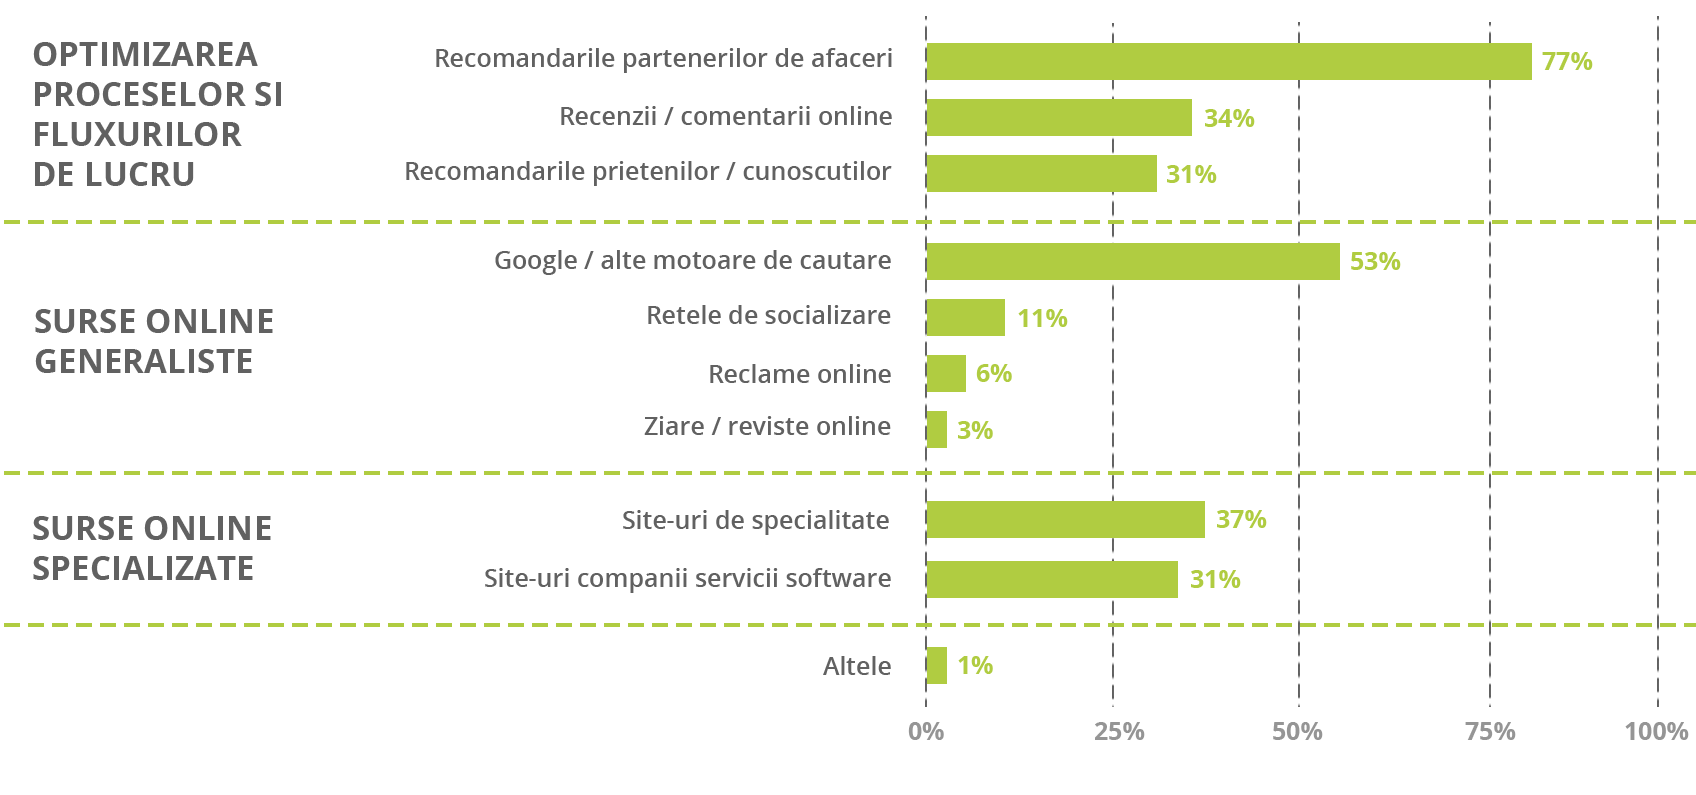 77% dintre companii apeleaza la recomandarile partenerilor de afaceri